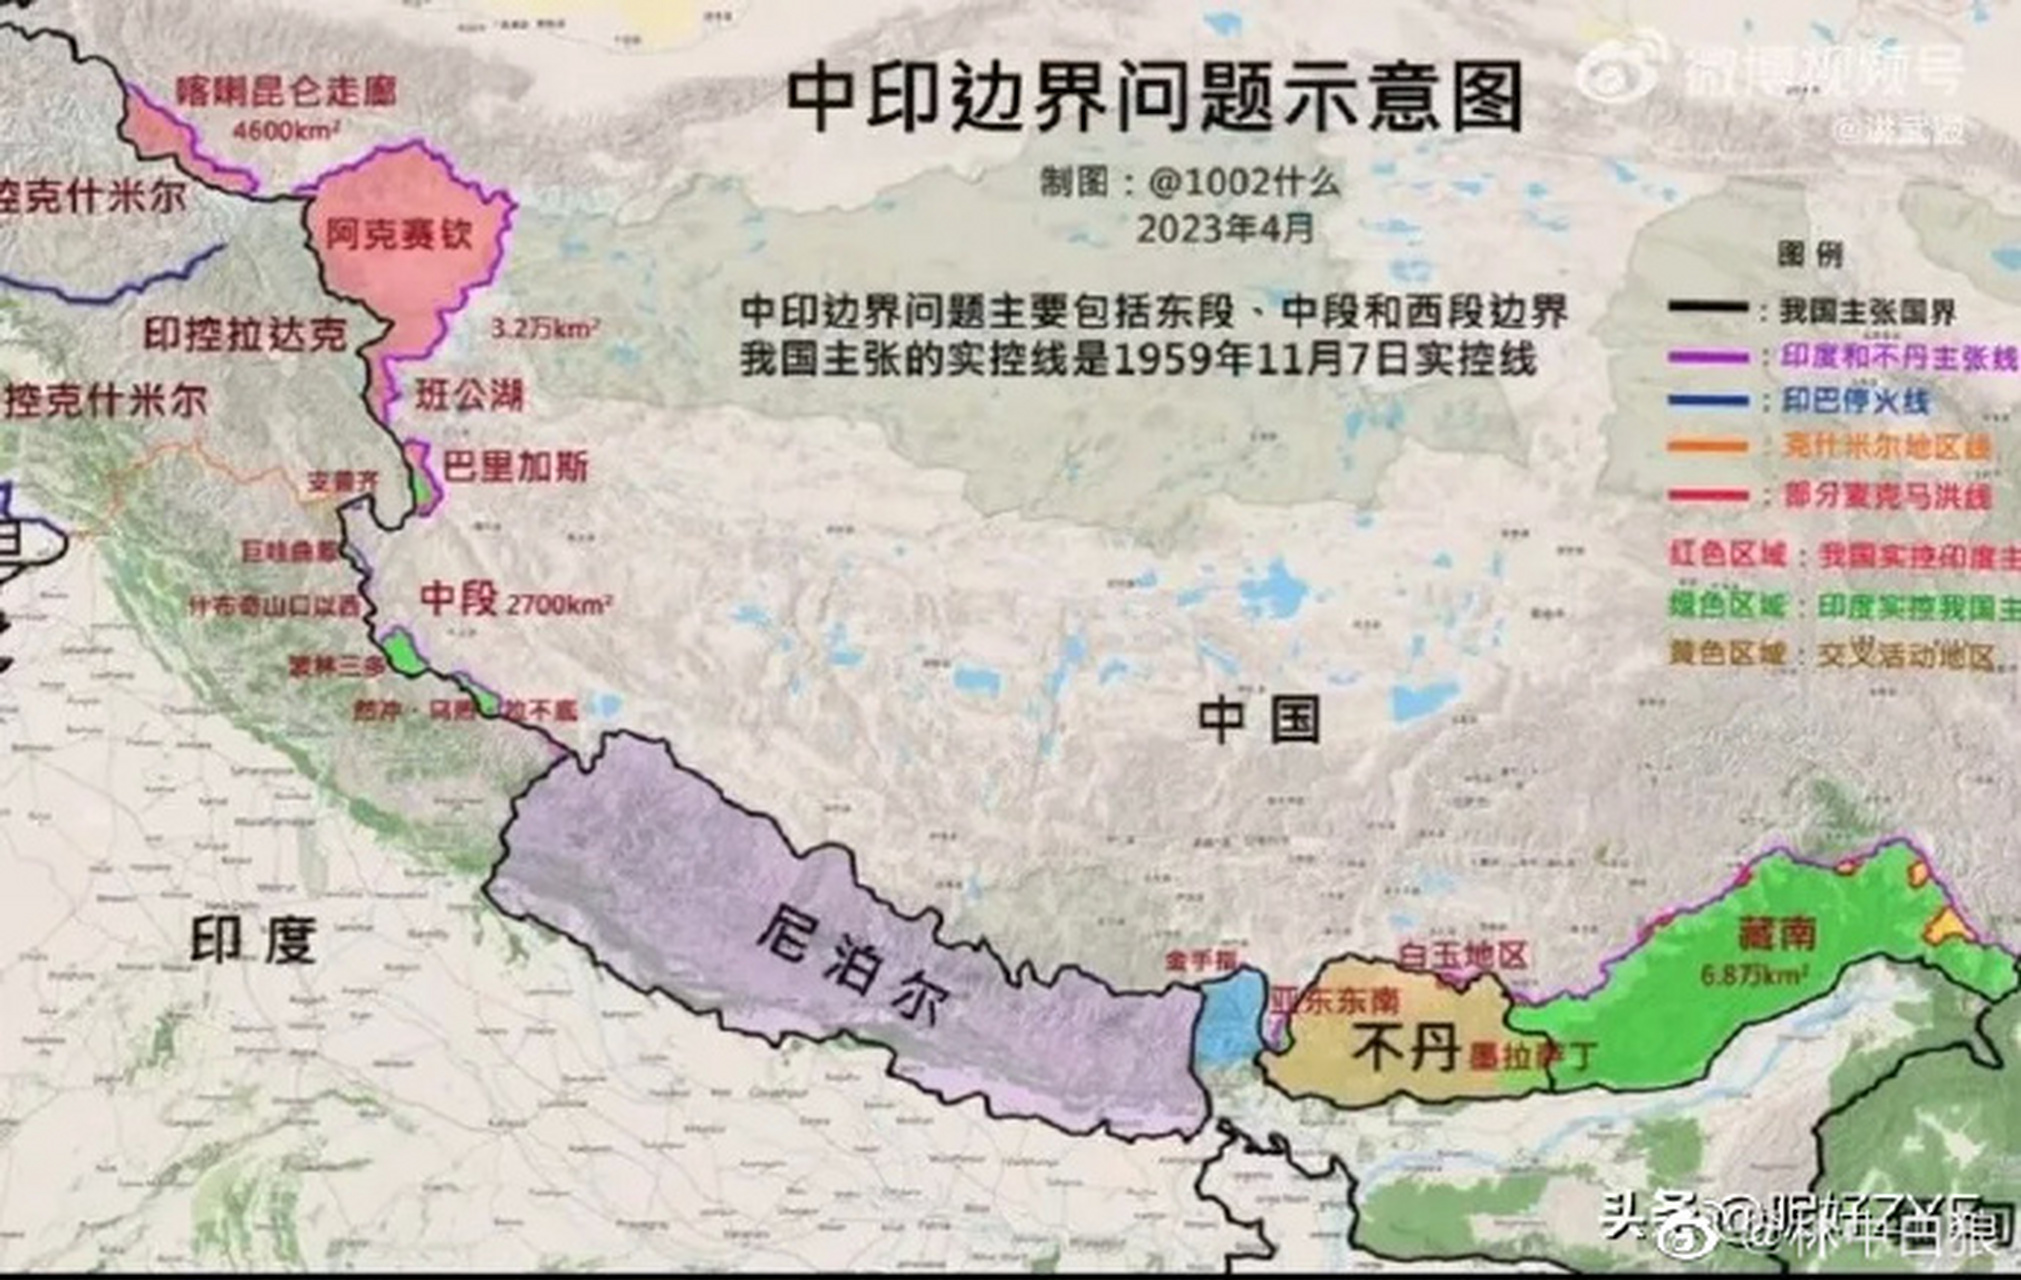 中印边界问题示意图 绿色为印度实控,粉红为中国实控